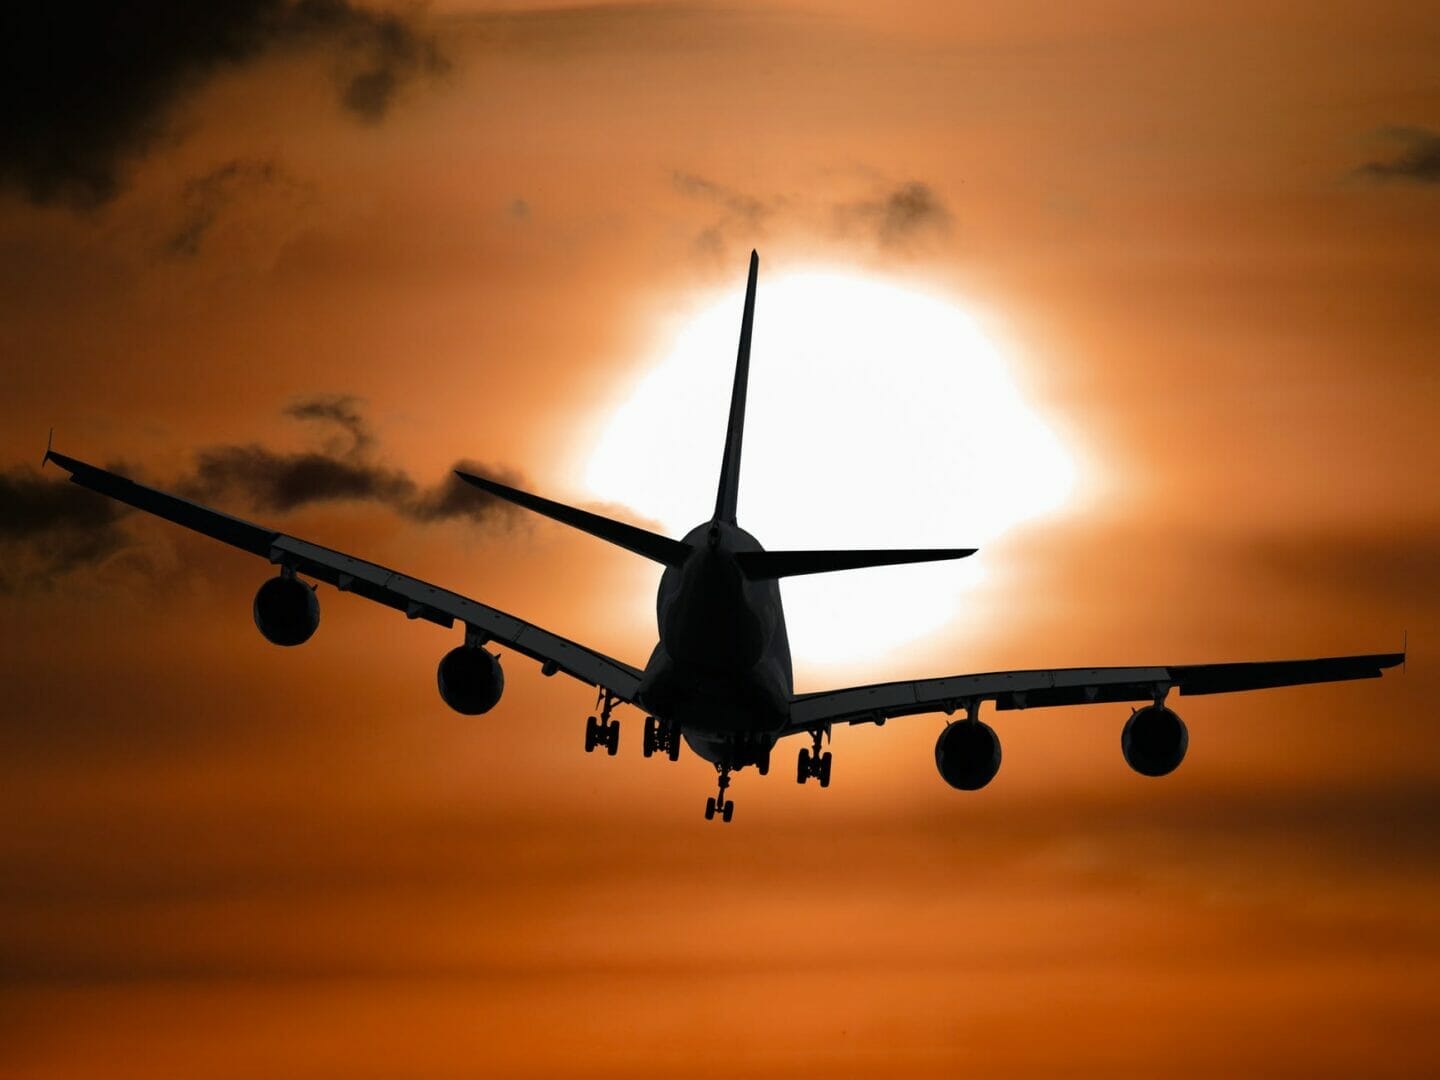 immagine ombra di un aereo che vola durante il tramonto - Prenota voli economici per l'Europa 